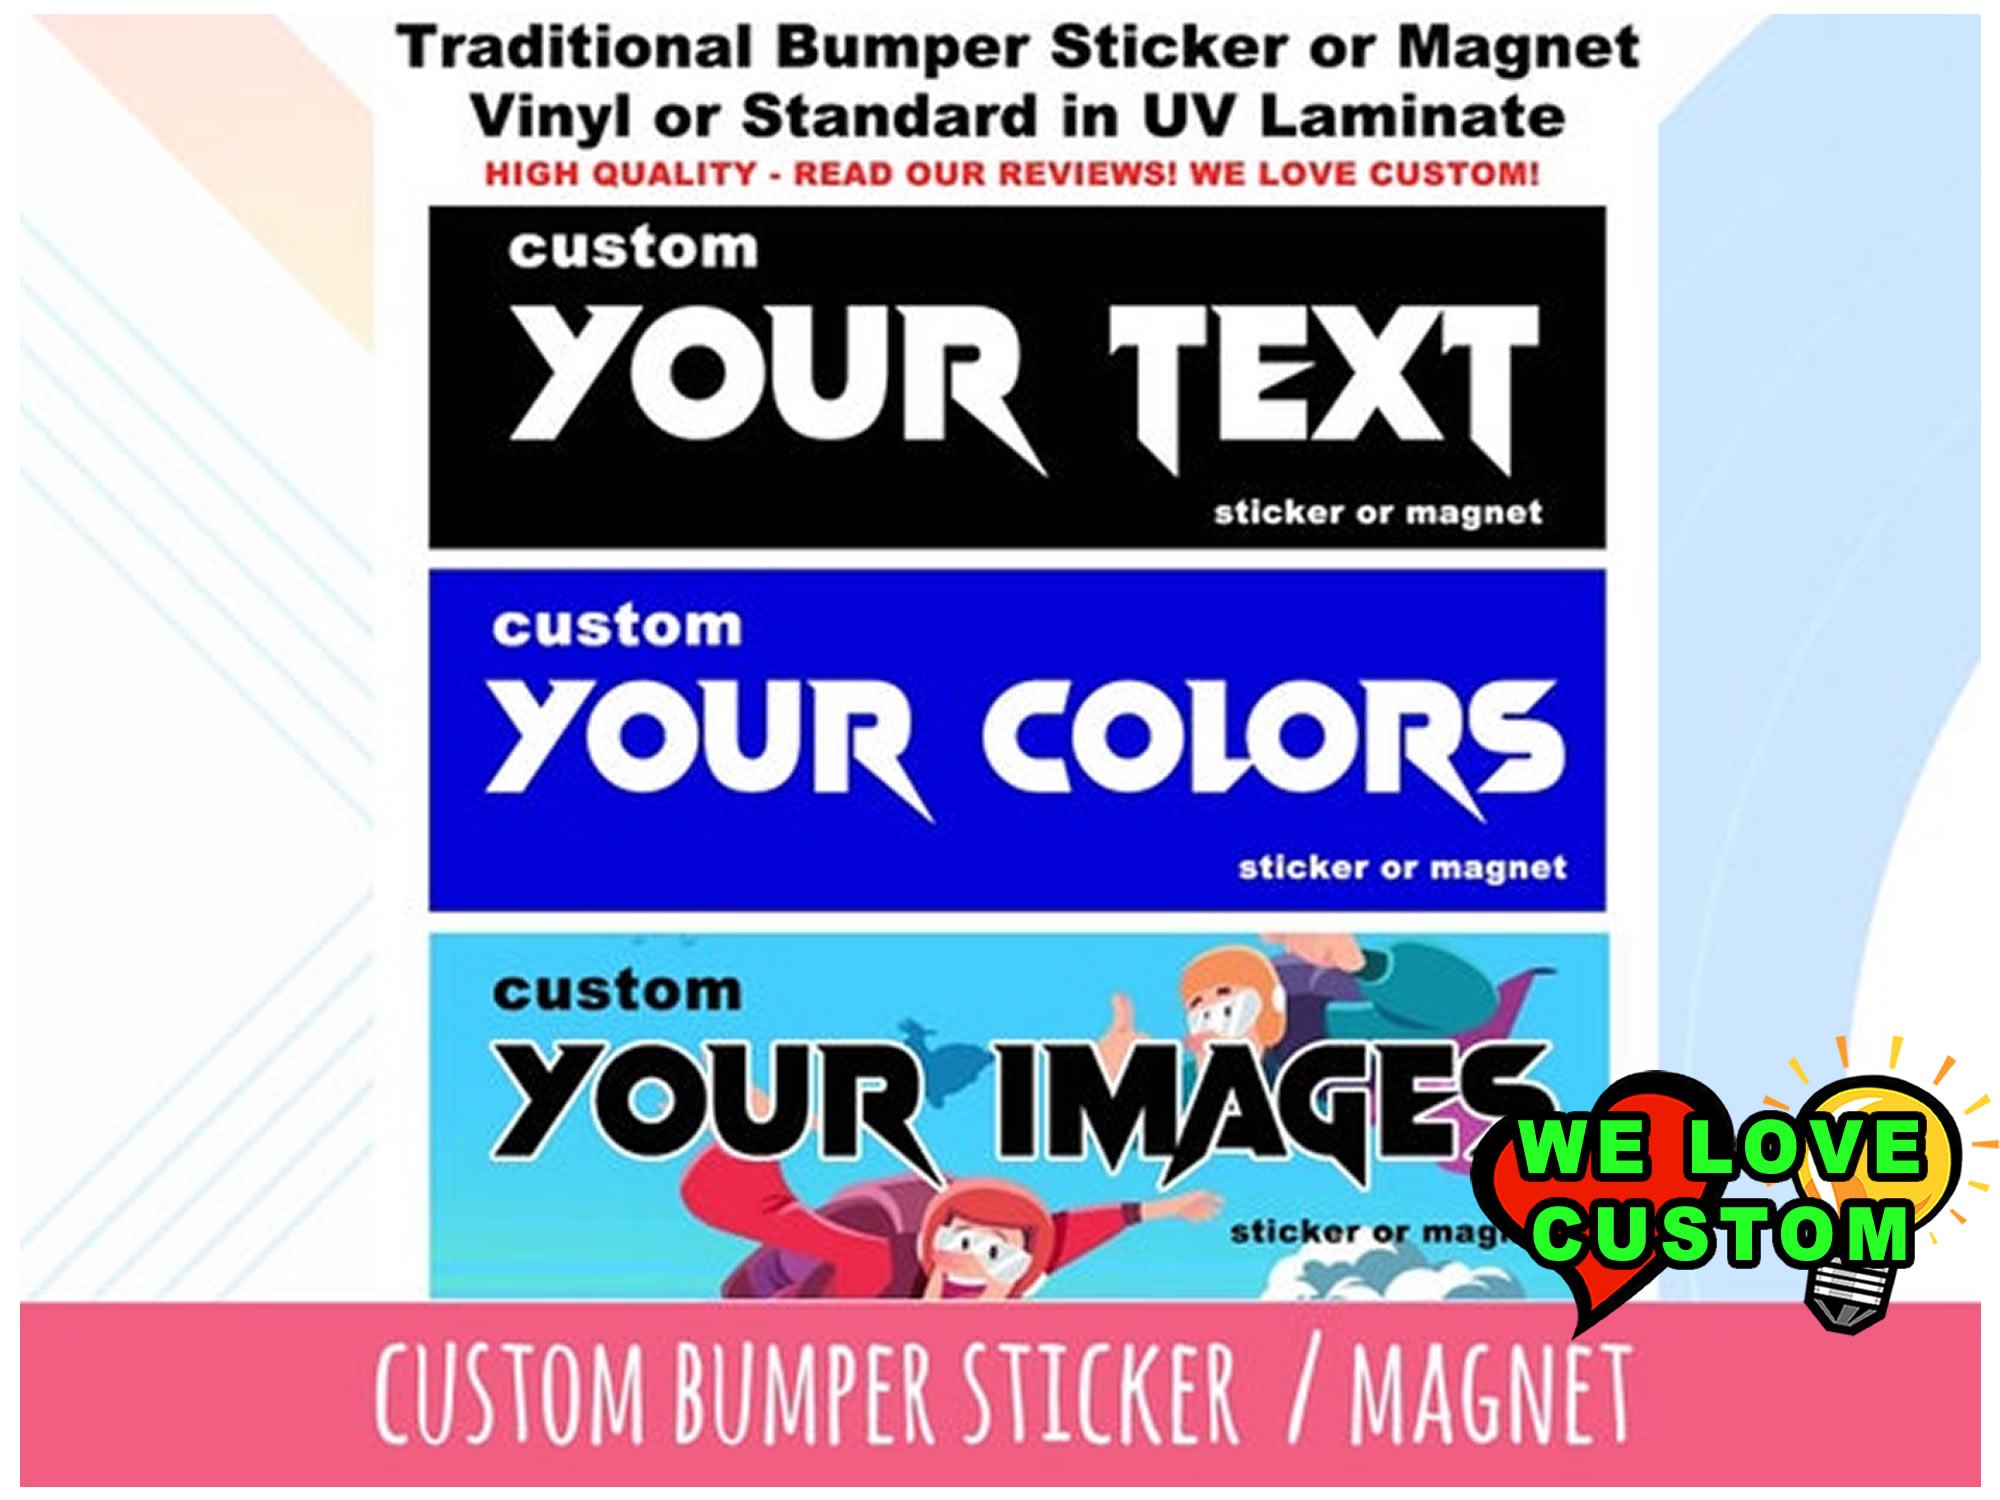 Custom Vinyl Bumper Sticker, Bumper Sticker Window Cling or Bumper Sticker Magnet in UV Laminate Coating